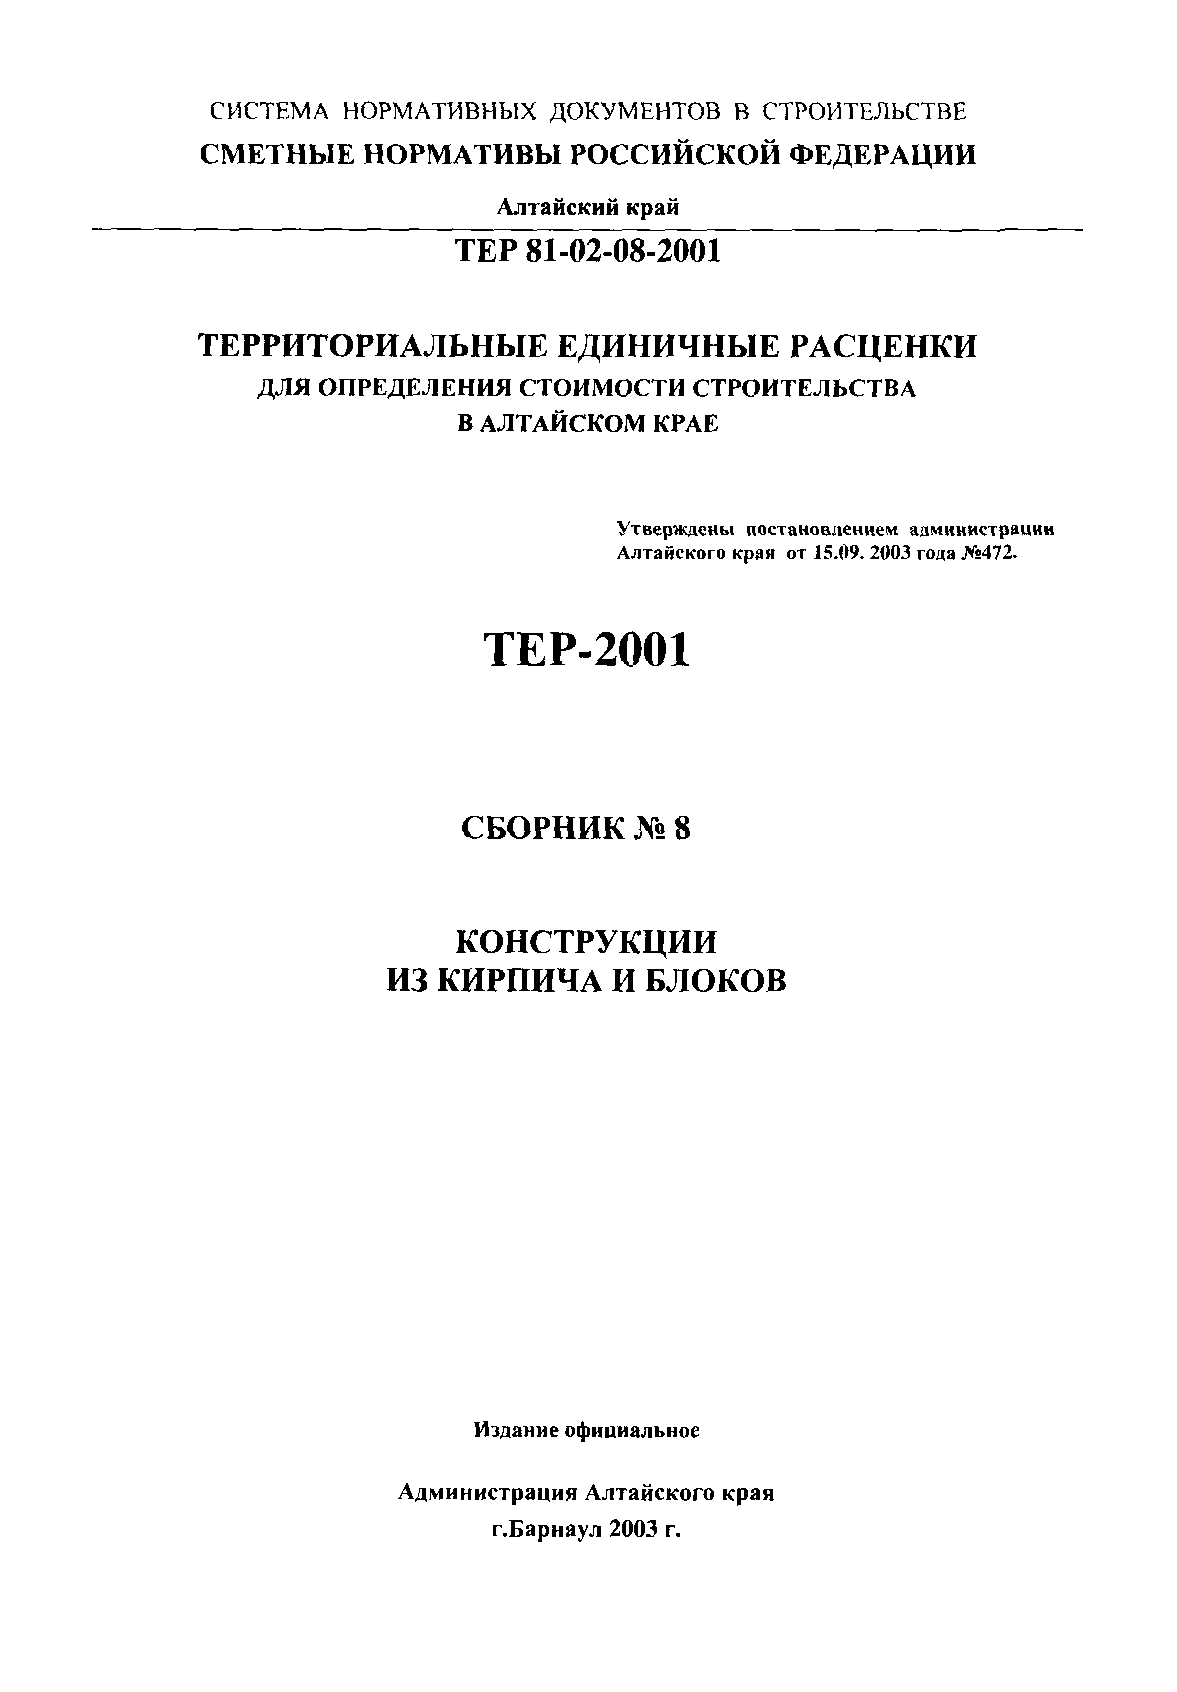 ТЕР Алтайский край 2001-08